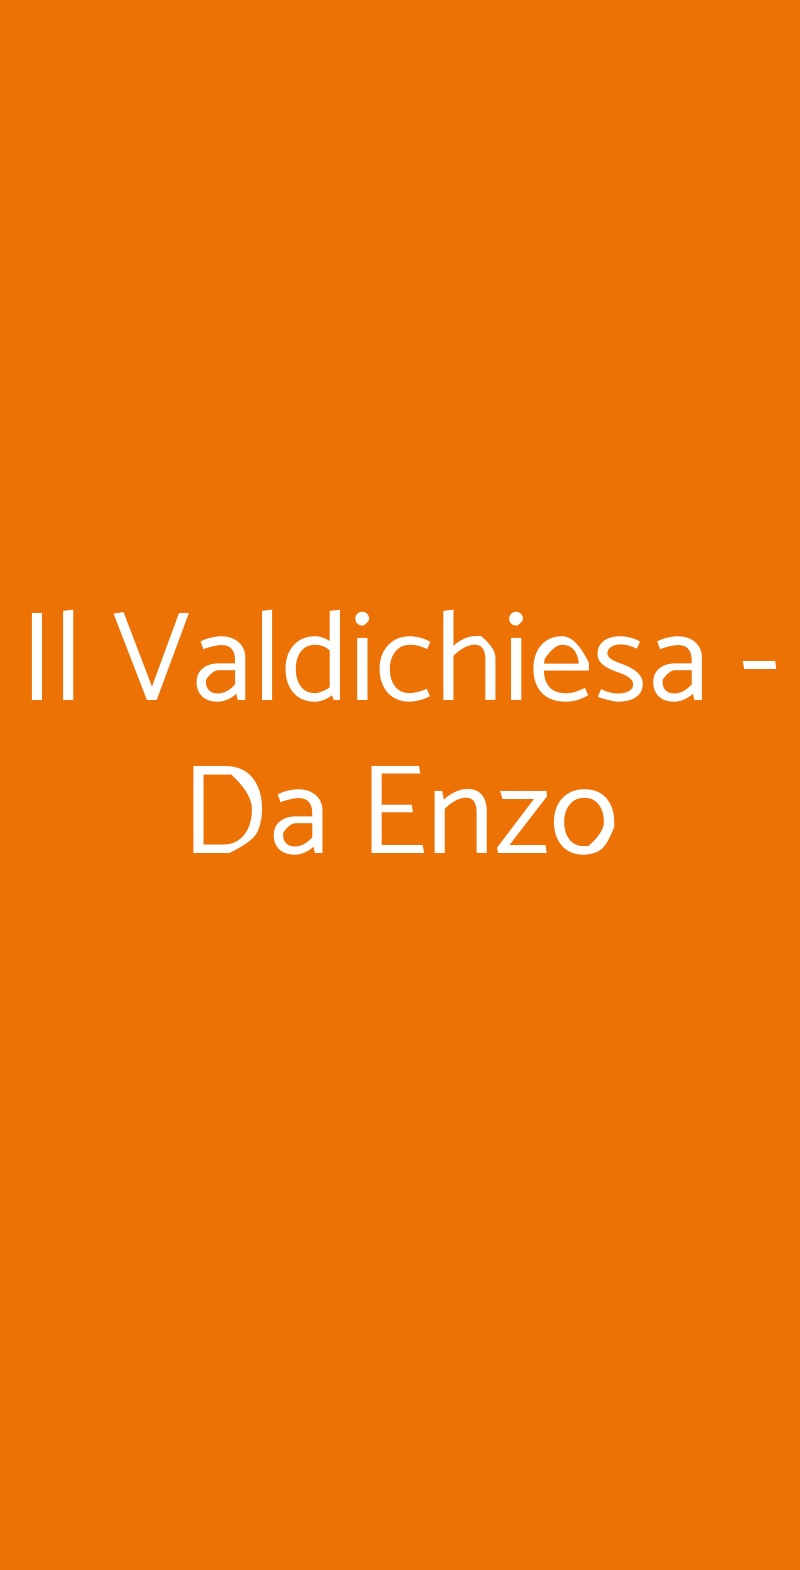 Il Valdichiesa - Da Enzo Villanova d'Asti menù 1 pagina